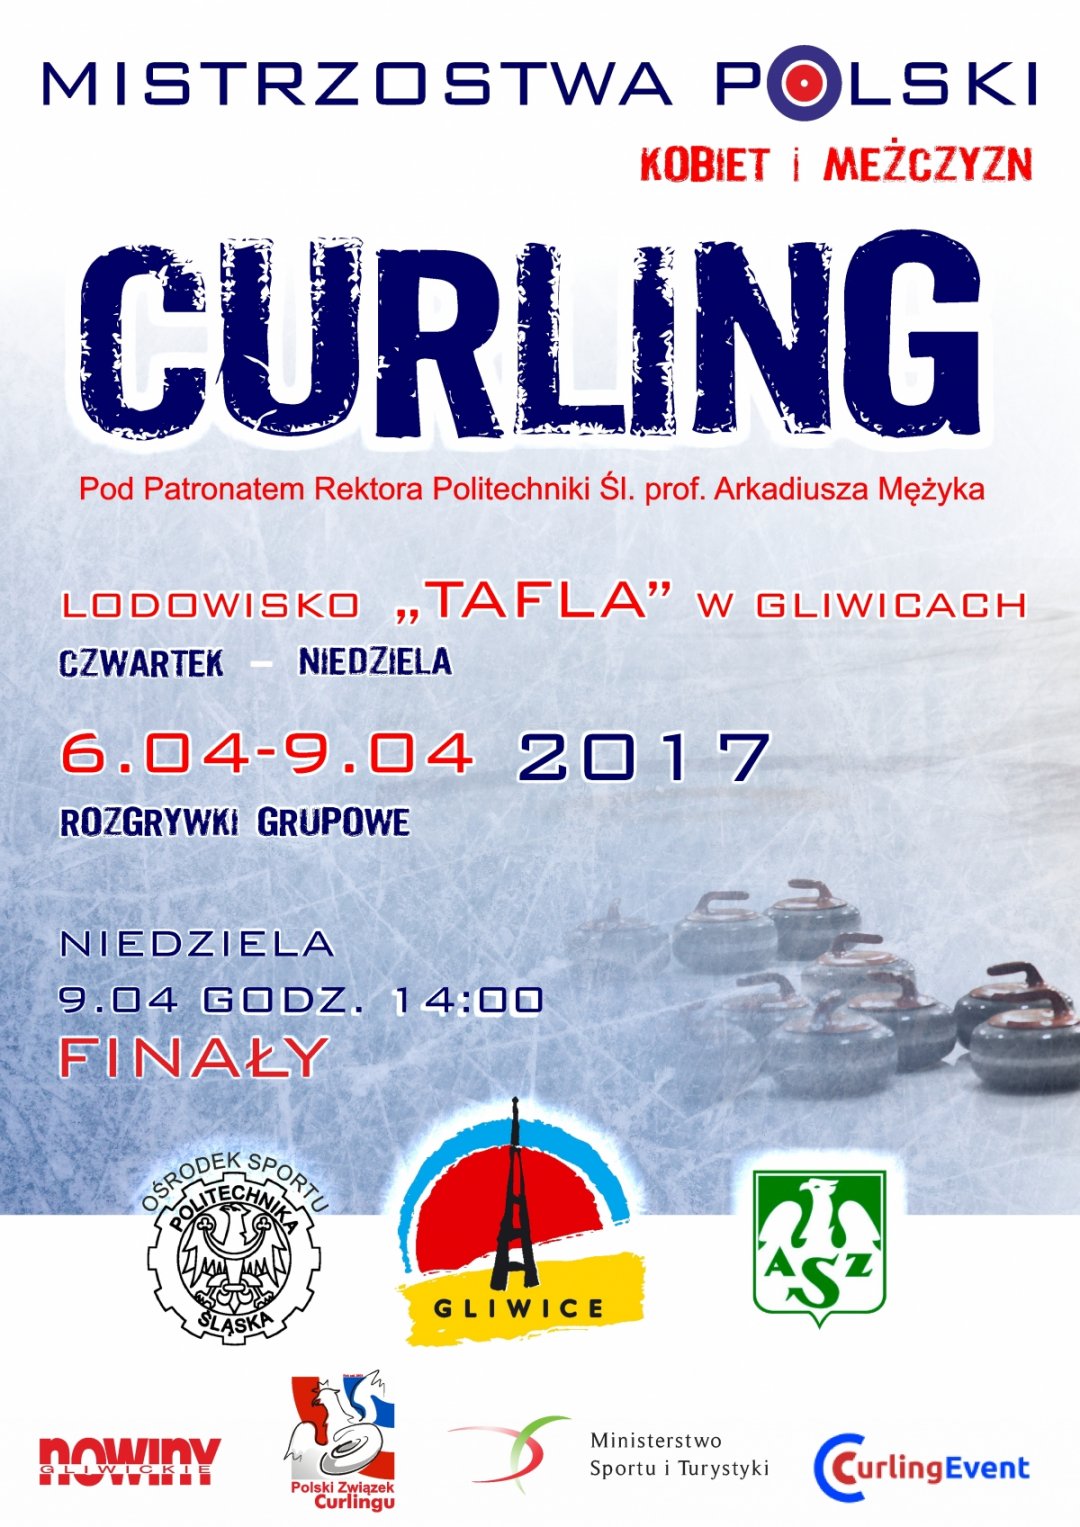 Mistrzostwa Polski Kobiet i Mężczyzn w curlingu - Gliwice 2017